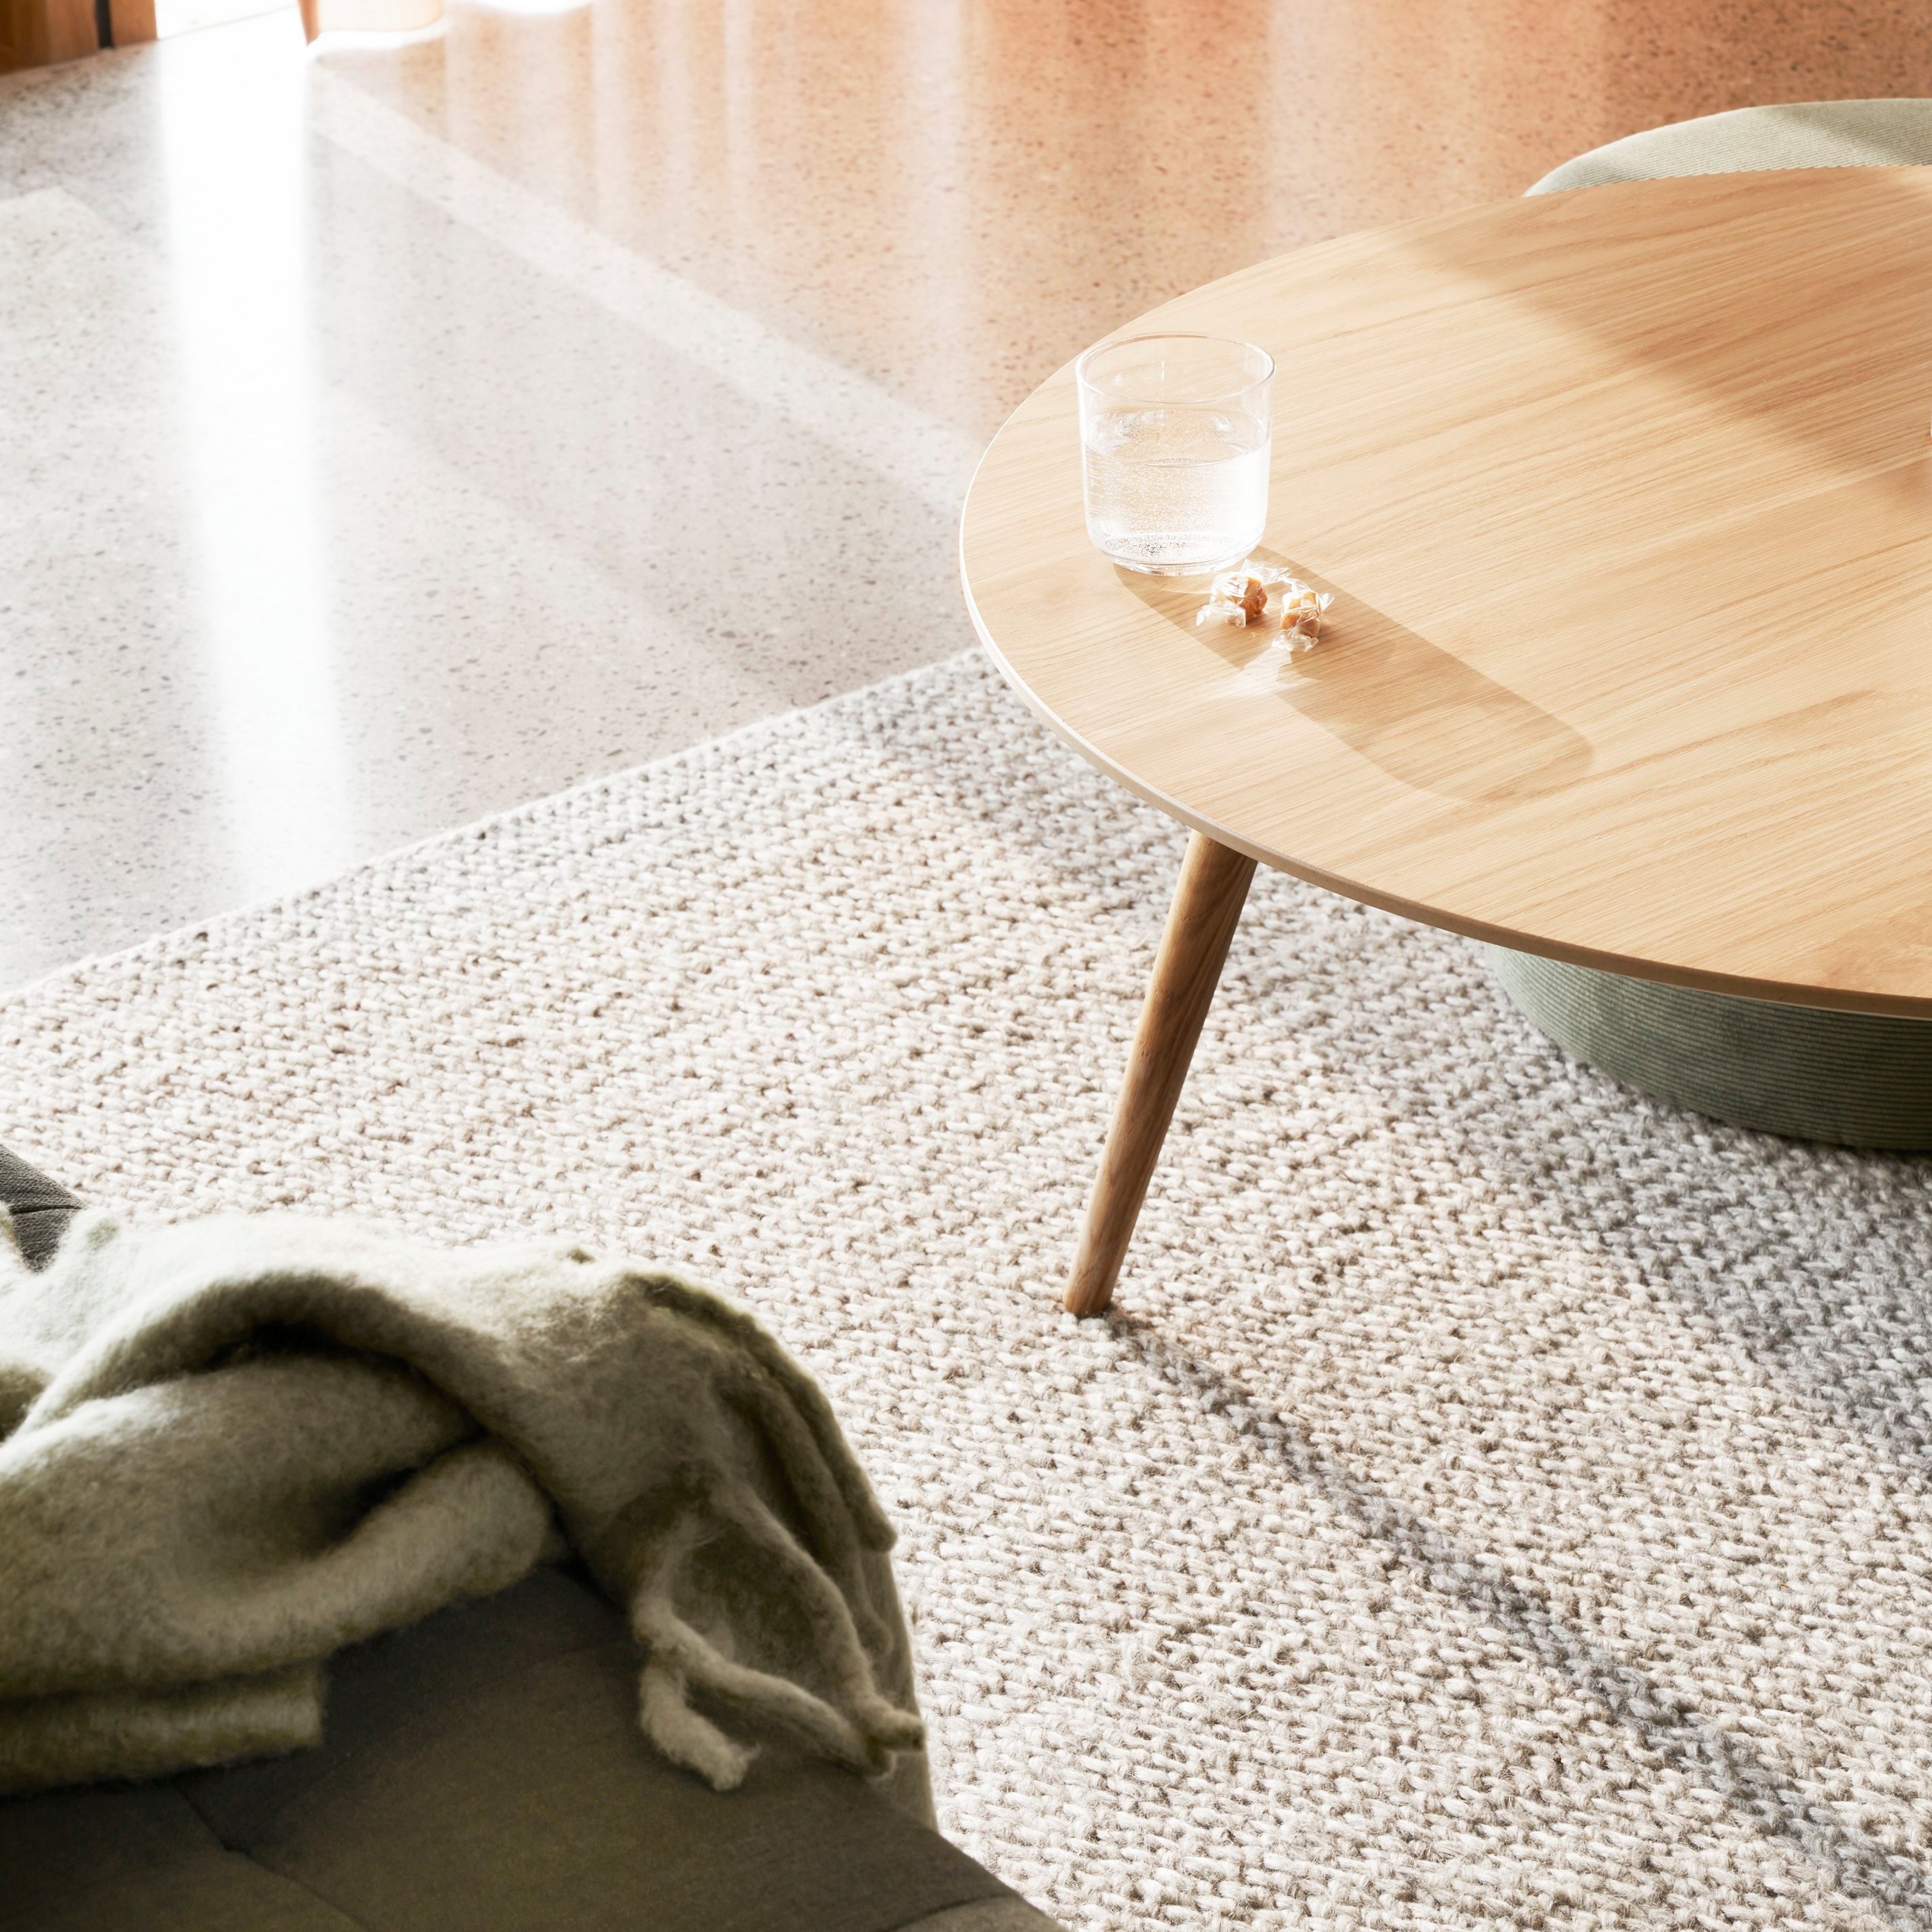 阳光下，纹理感地毯搭配圆形木桌、一杯水和一块柔软的盖毯。